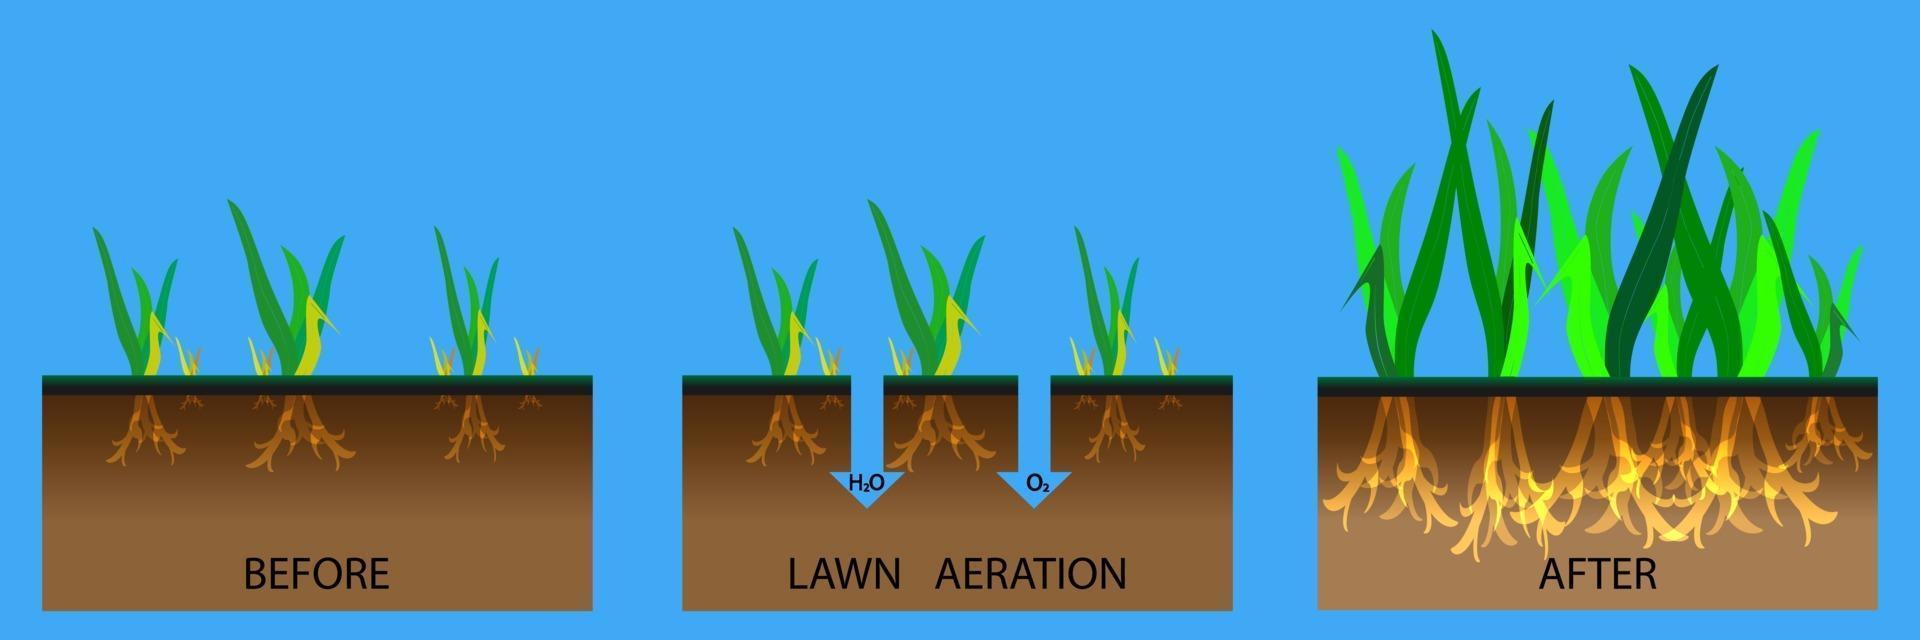 ilustração de estágio de aeração de gramado vetor